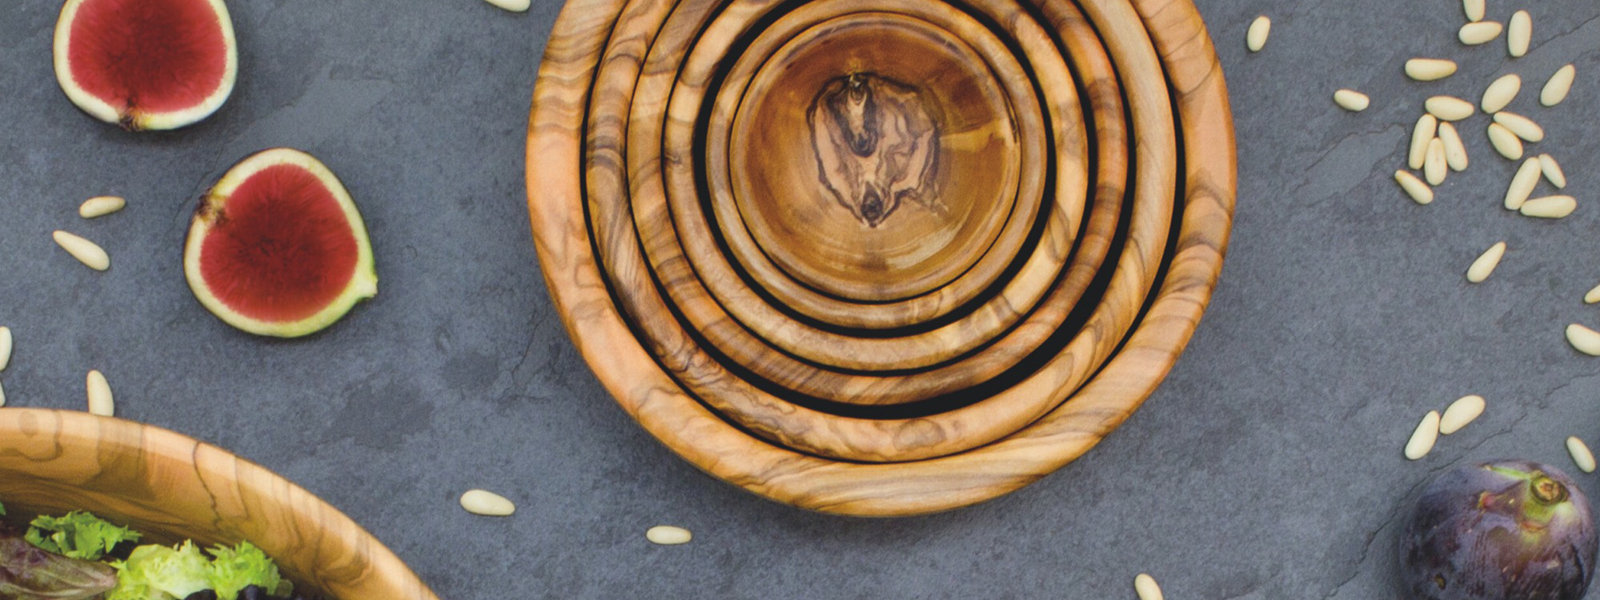 Berard Olive Wood Racine Long Cutting Board